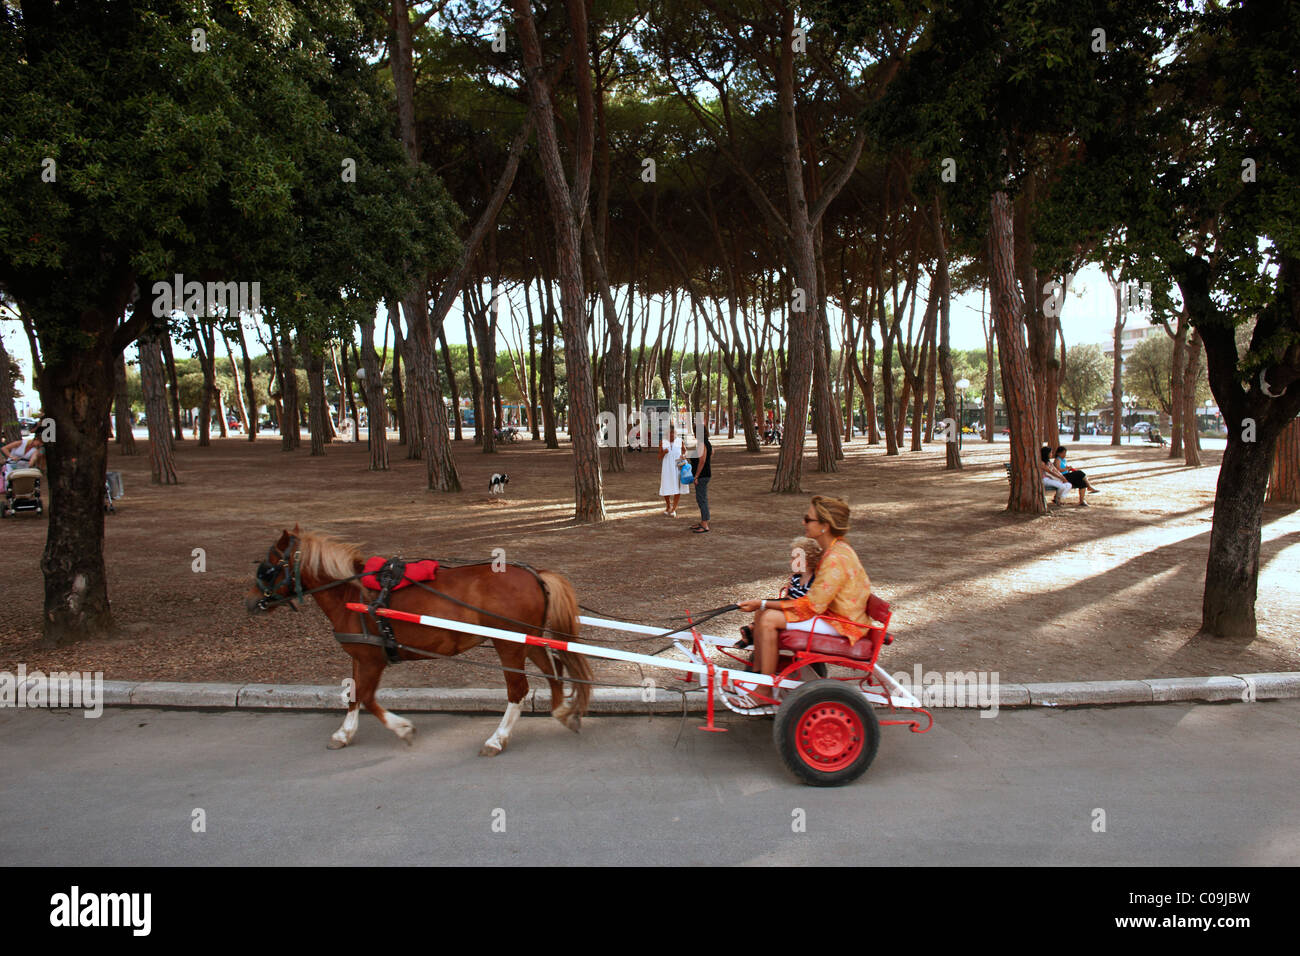 Una miniatura del Cavallo traina un carrello con una madre e figlio passato  un parco in Forte dei Marmi, Italia Foto stock - Alamy